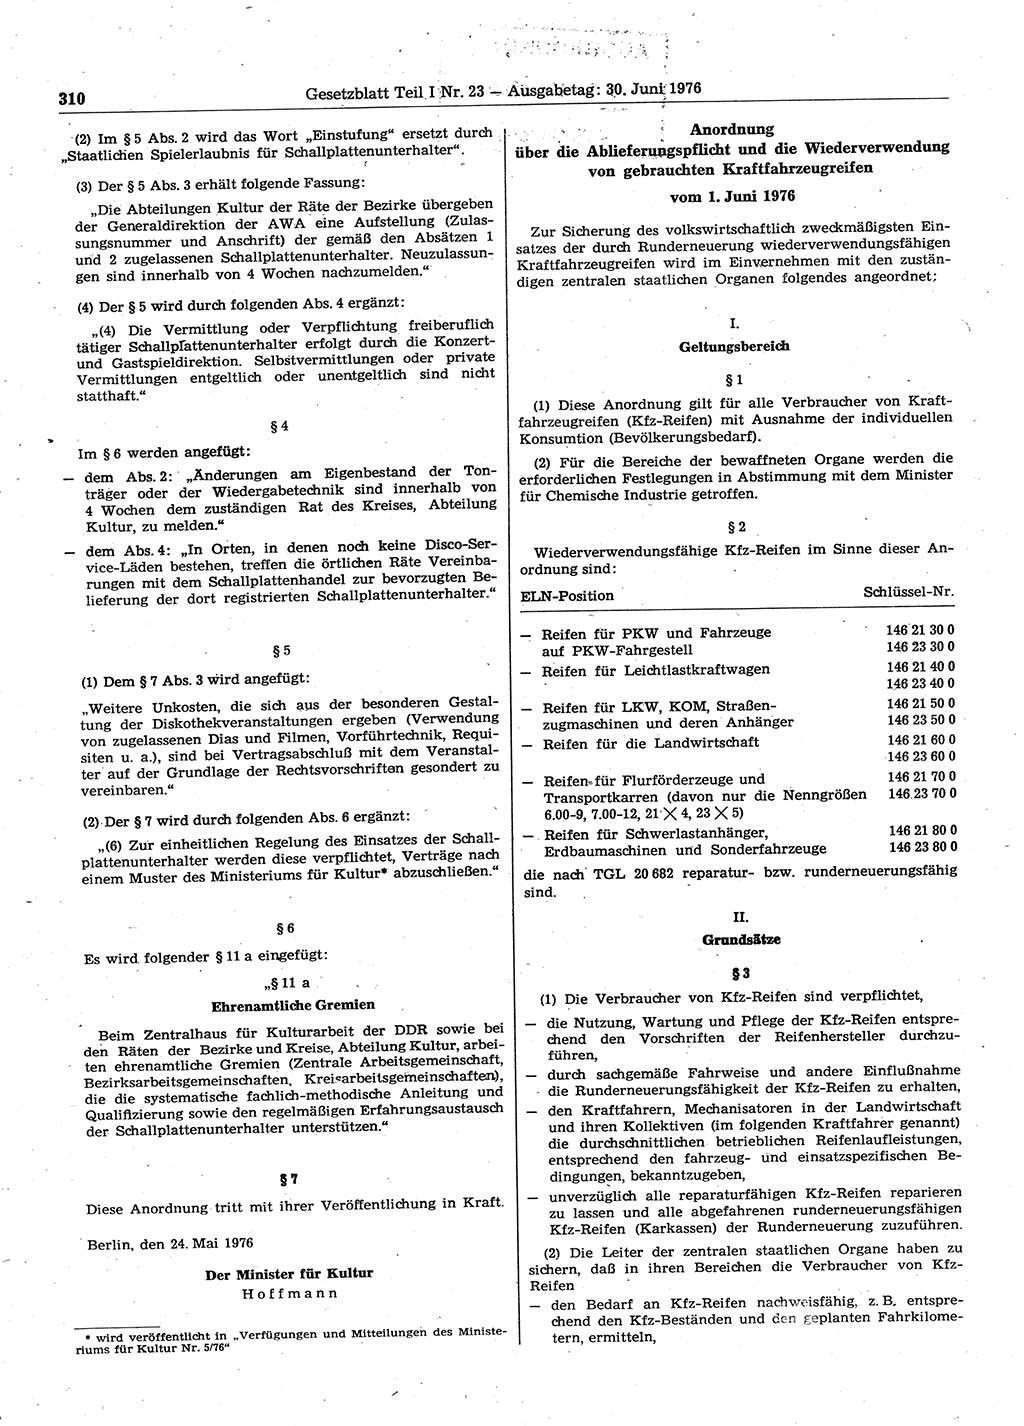 Gesetzblatt (GBl.) der Deutschen Demokratischen Republik (DDR) Teil Ⅰ 1976, Seite 310 (GBl. DDR Ⅰ 1976, S. 310)